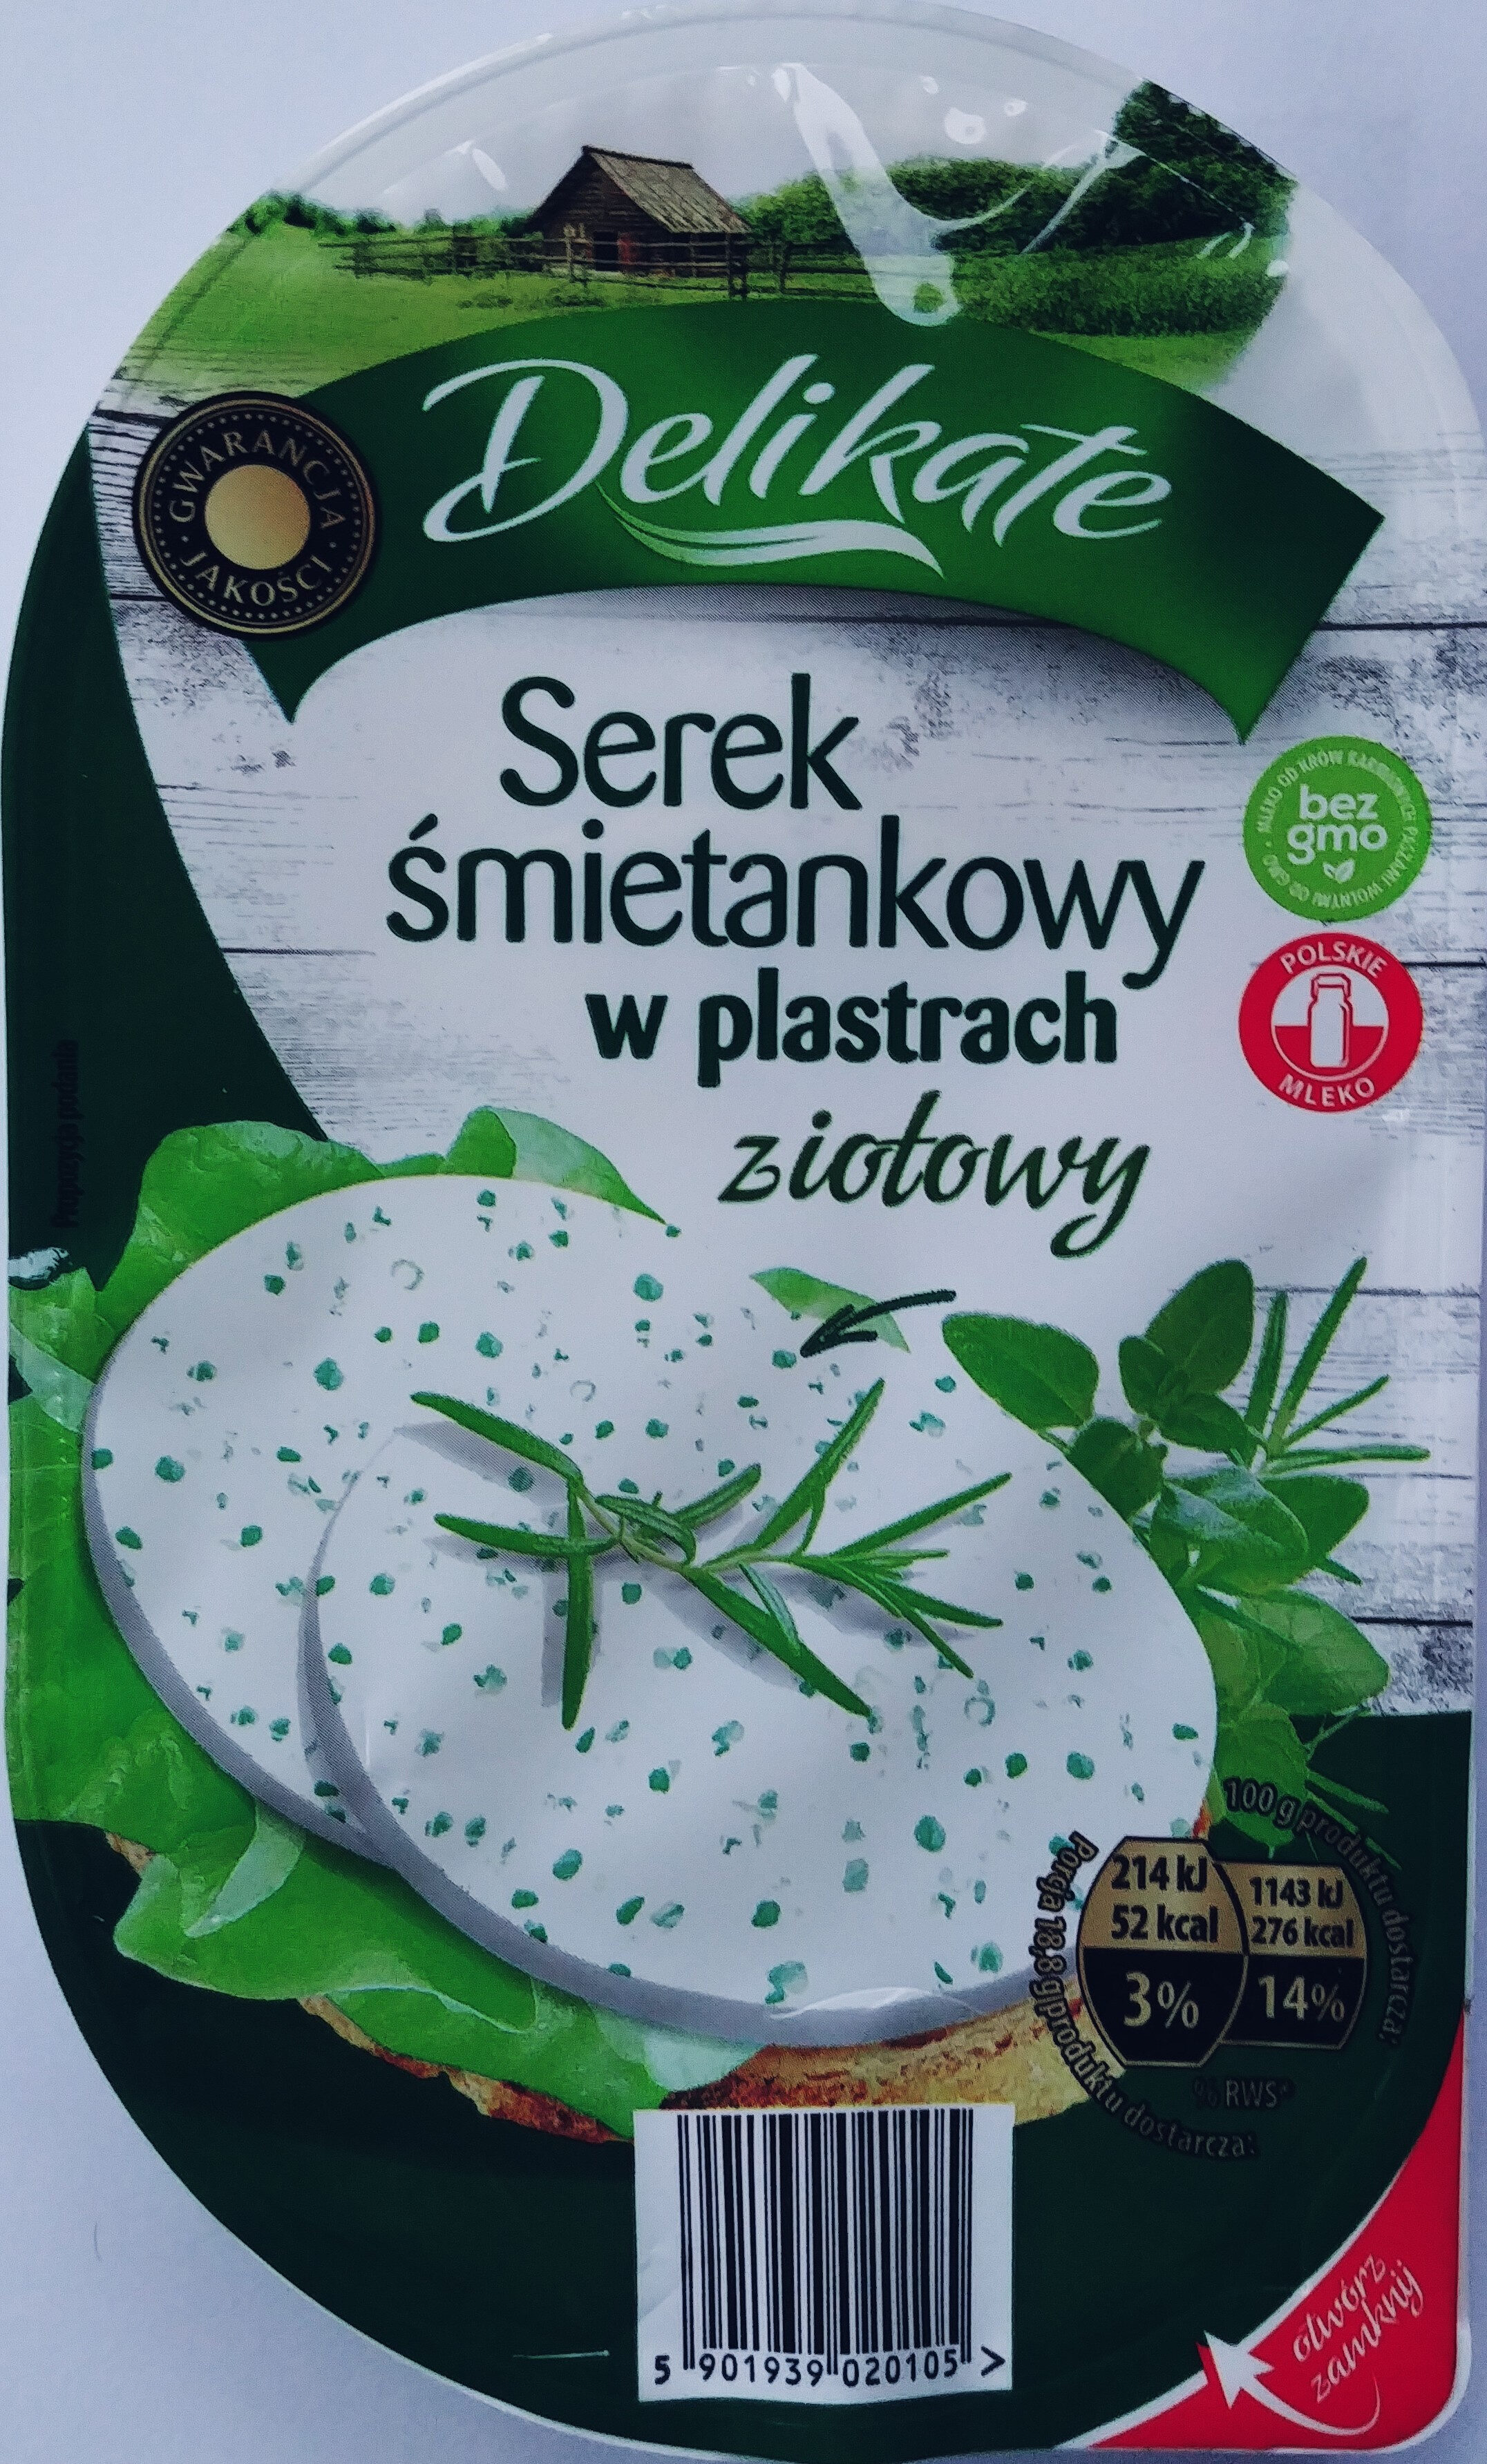 Serek śmietankowy w plastrach ziołowy - Product - pl